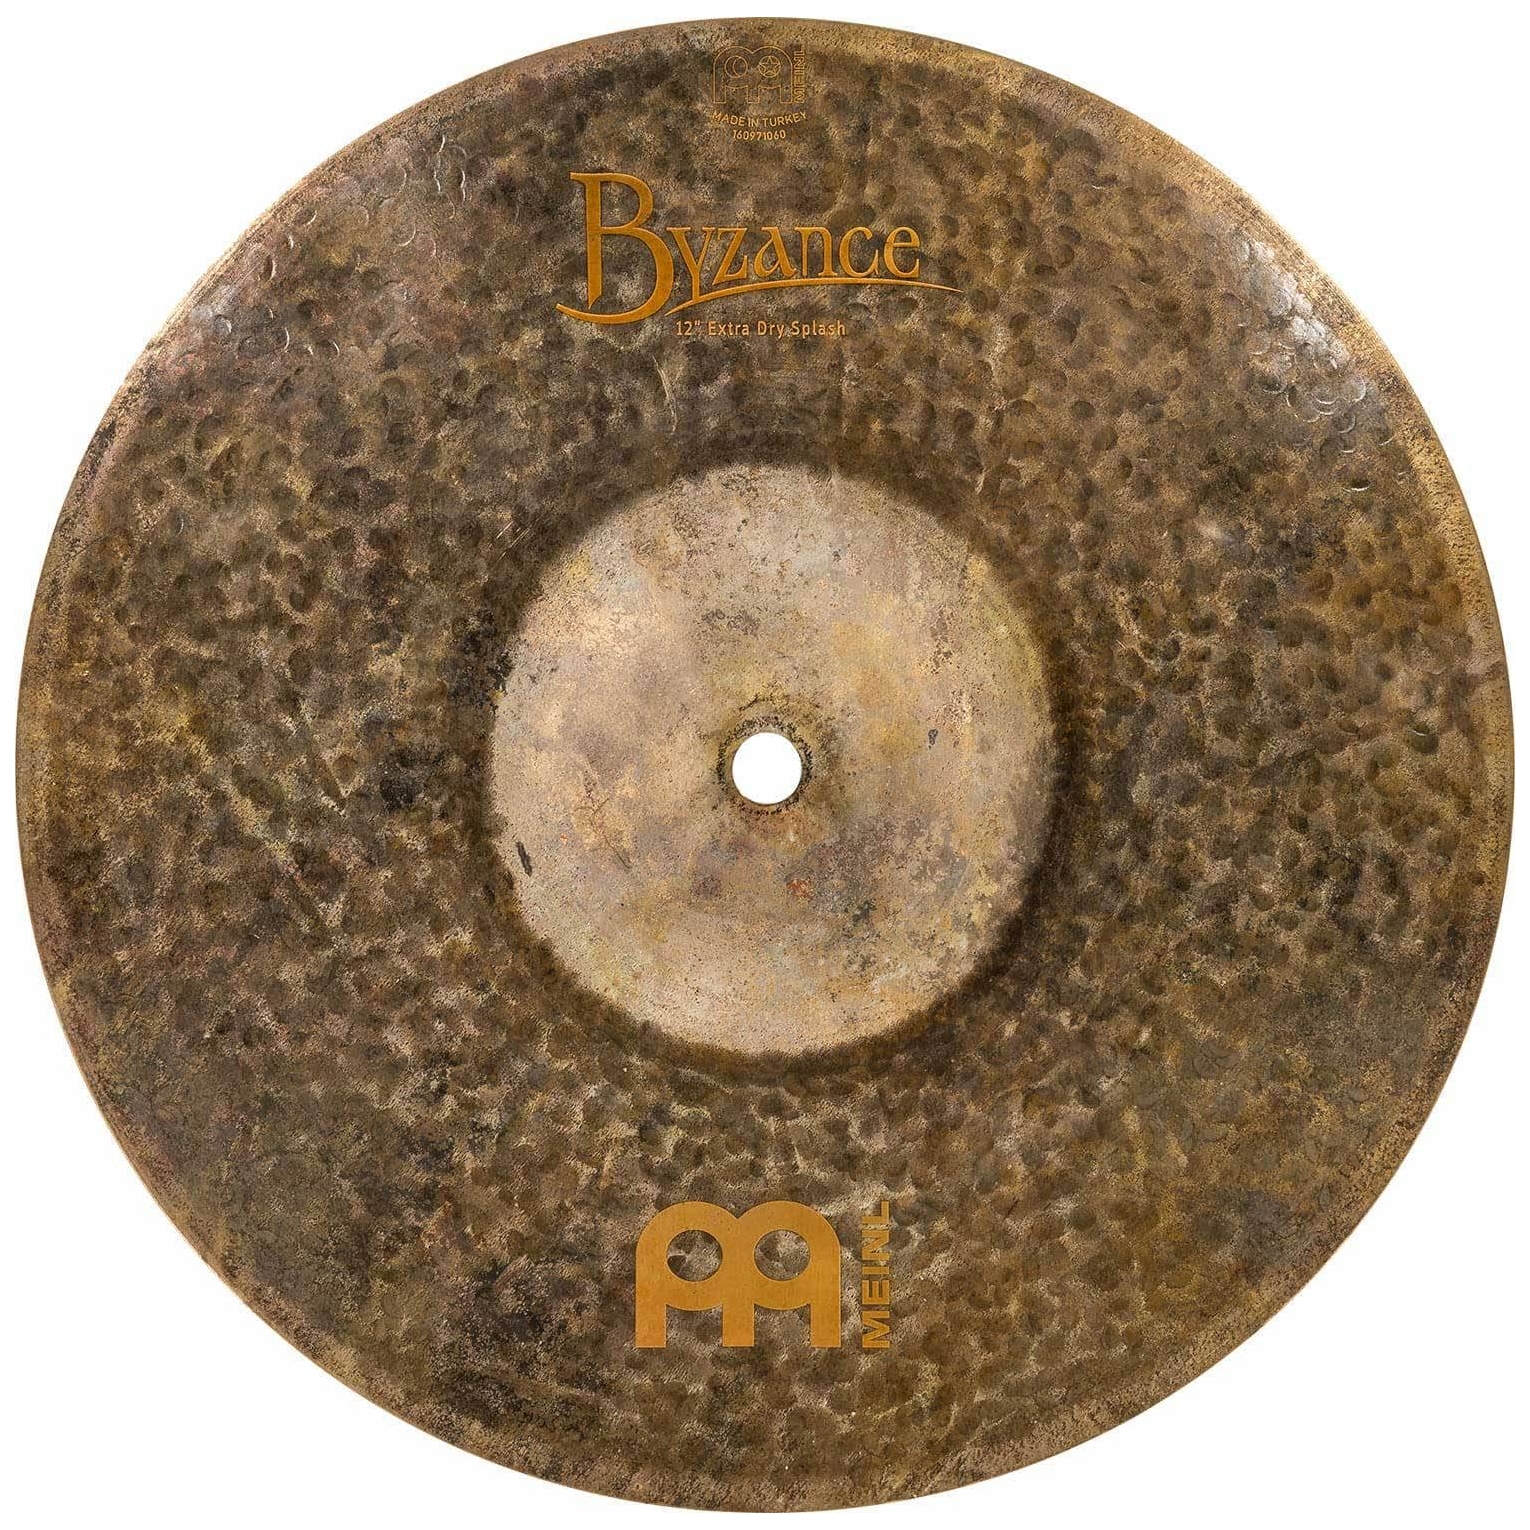 Meinl Cymbals B12EDS - 12" Byzance Extra Dry Splash 